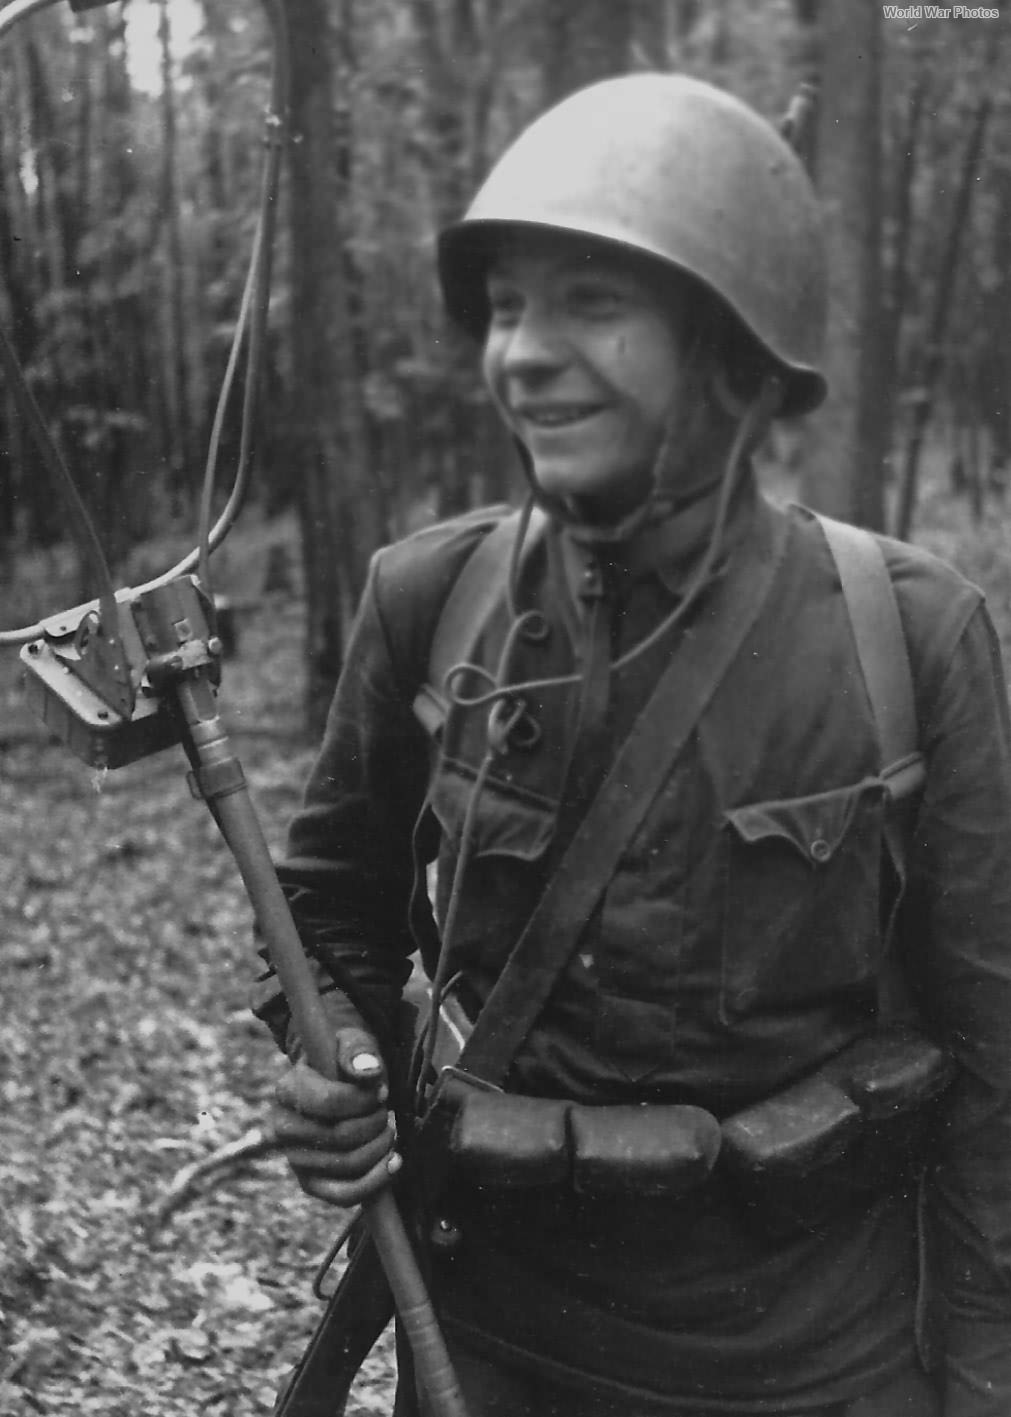 Soviet Engineer-Sapper | World War Photos